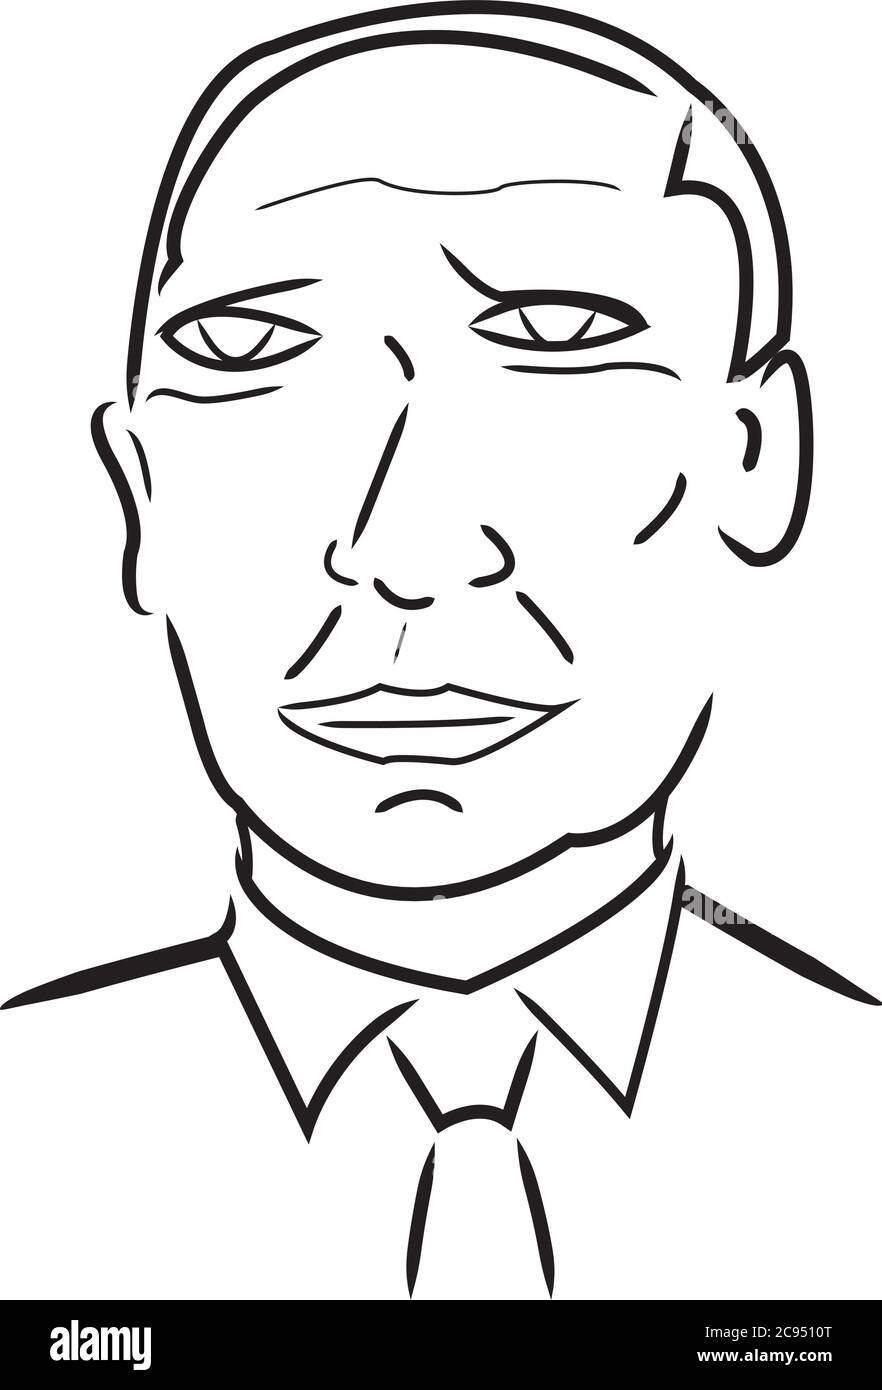 Caricature de Vladimir Poutine ou caricature de Vladimir, président russe Illustration de Vecteur